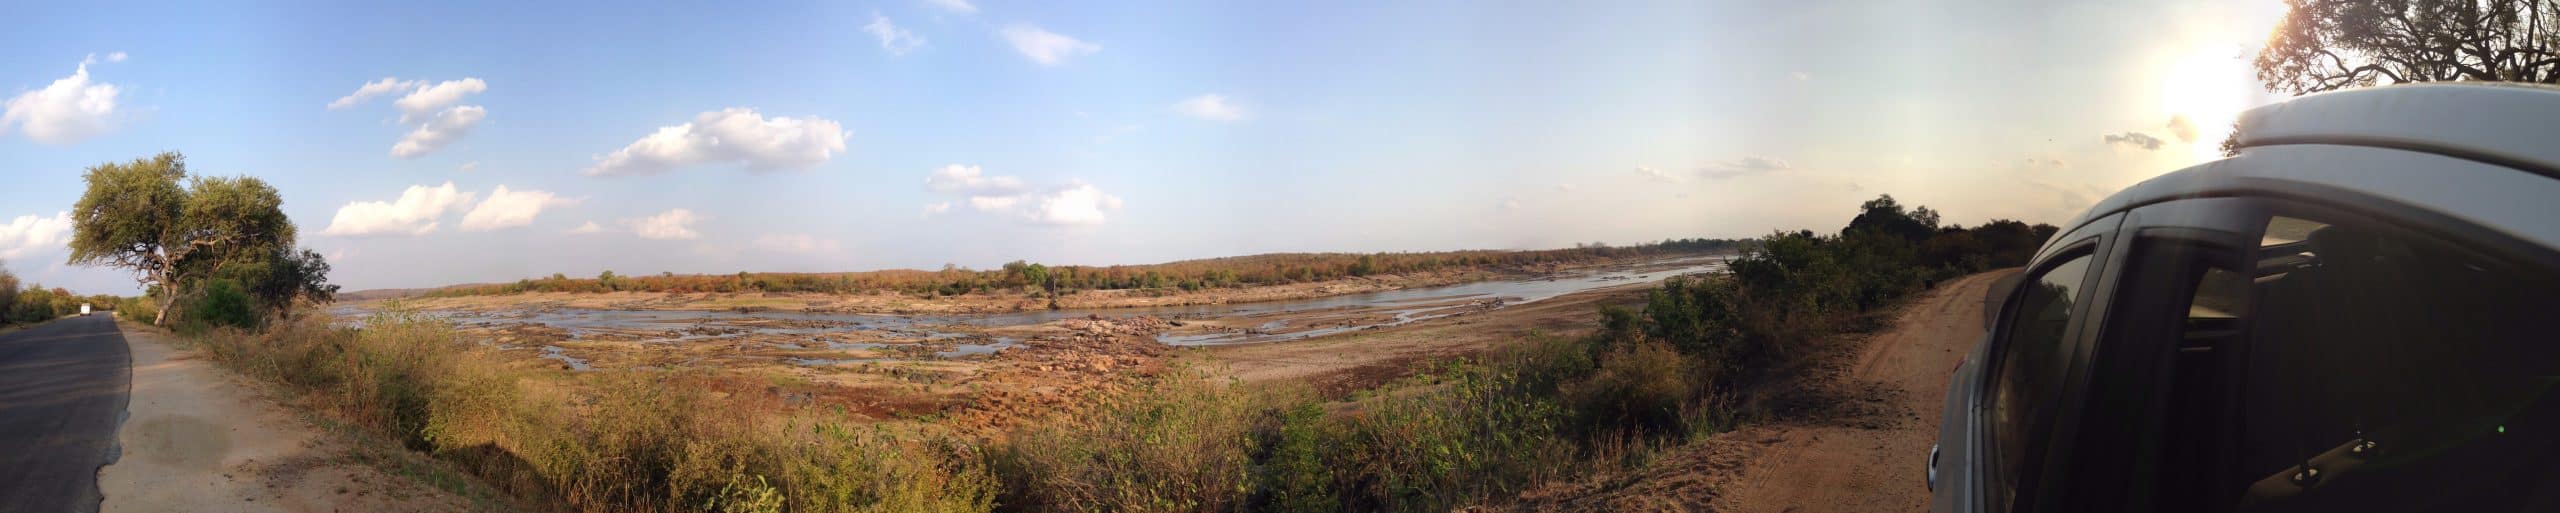 River viewpoint near Satara